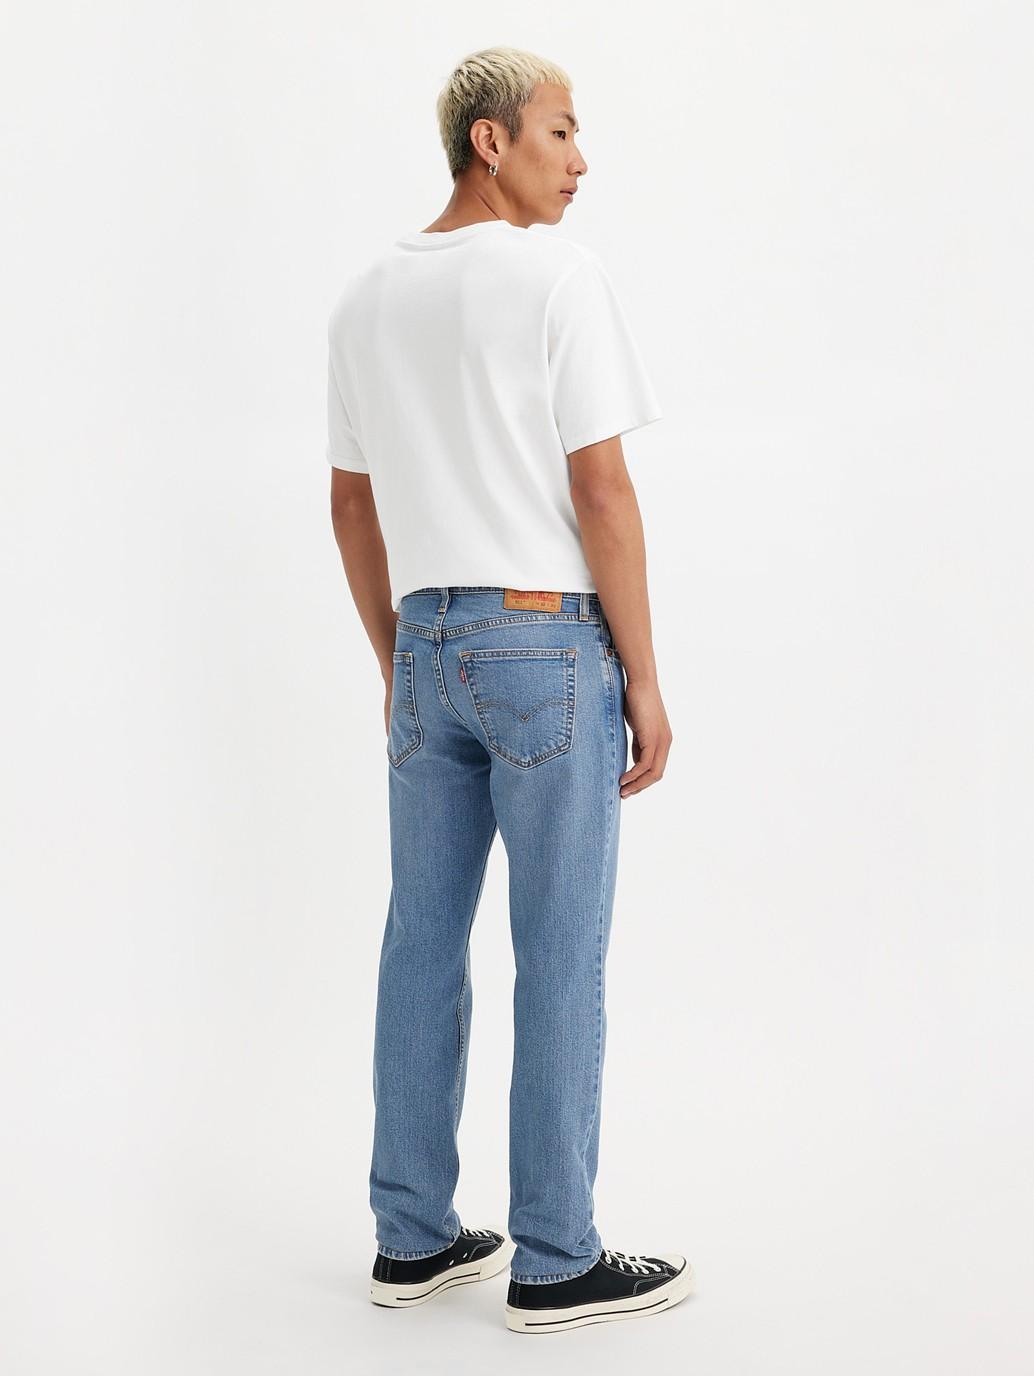 Buy Levi's® Men's 511™ Slim Jeans| Levi’s® Official Online Store PH